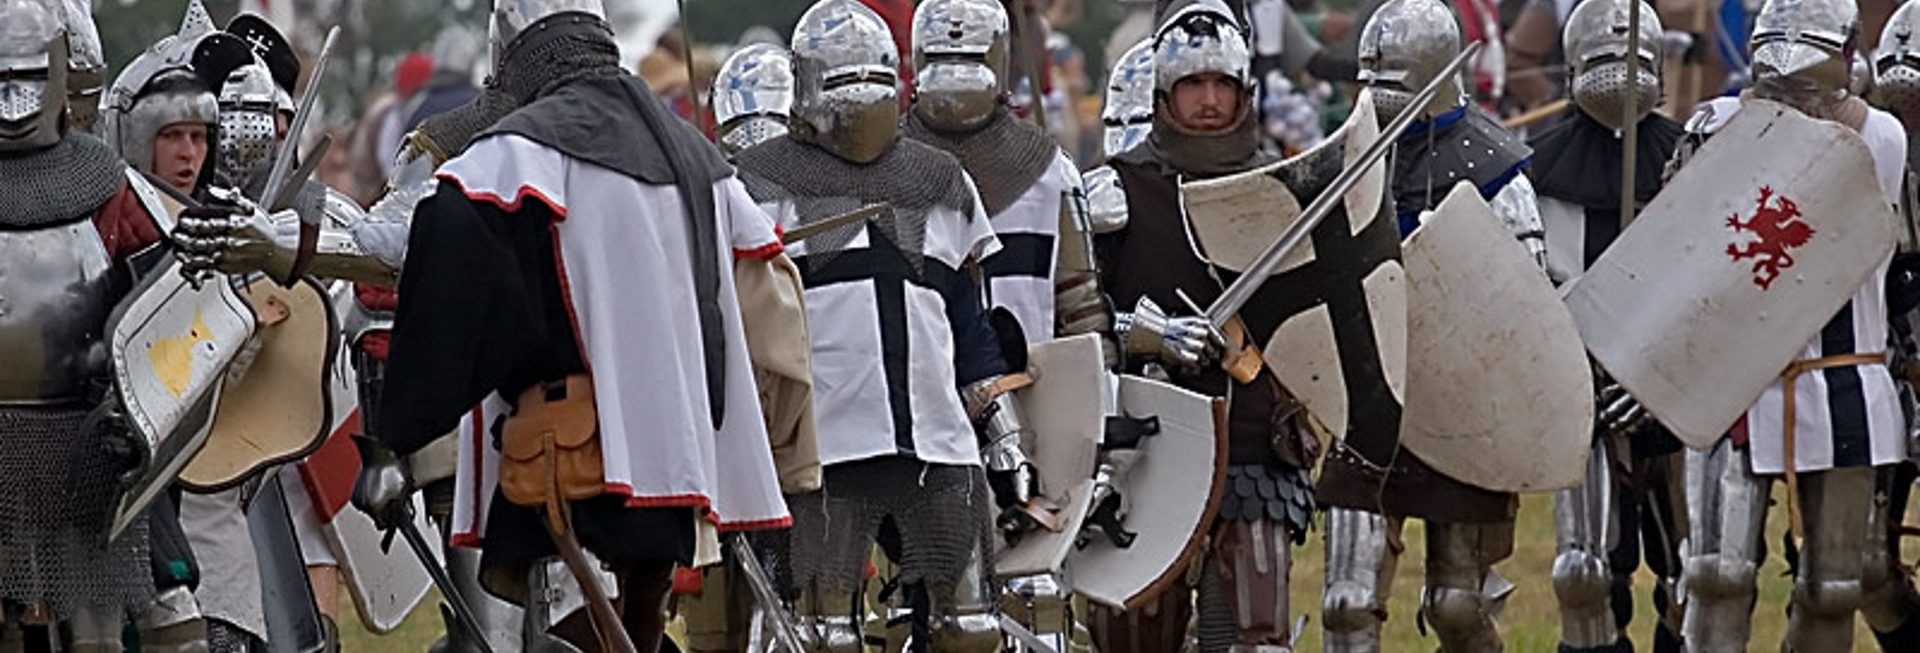 Zdjęcie zapraszające do Grunwaldu na 13 edycję Inscenizacji Bitwy pod Grunwaldem 2020. Na zdjęciu widzimy rycerzy ubranych w zbroje i stroje krzyżaków na polu bitwy pod Grunwaldem. 